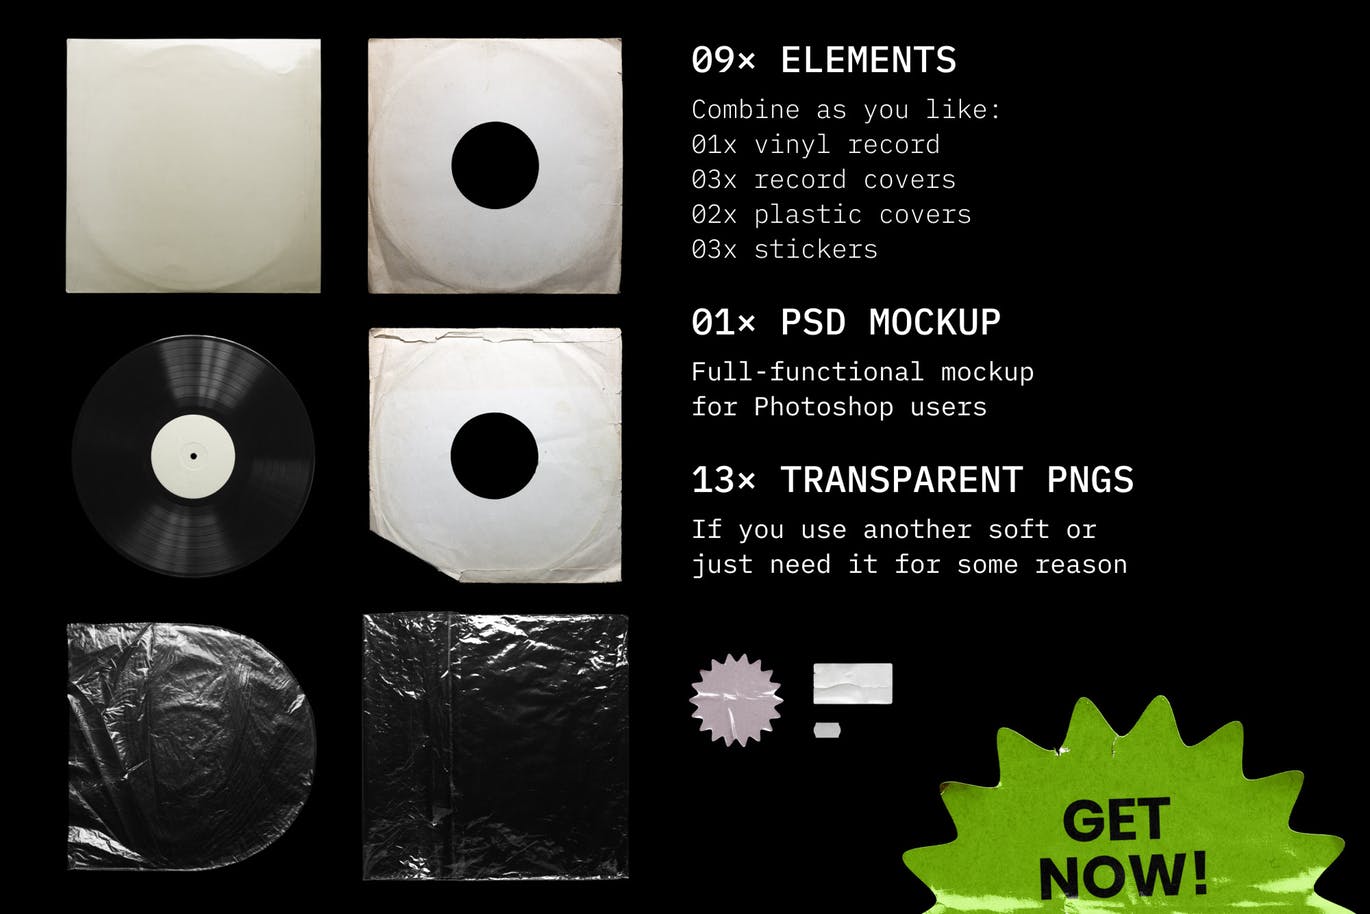 乙烯基唱片包装盒及封面设计图非凡图库精选模板 Vinyl Record Mockup插图(9)